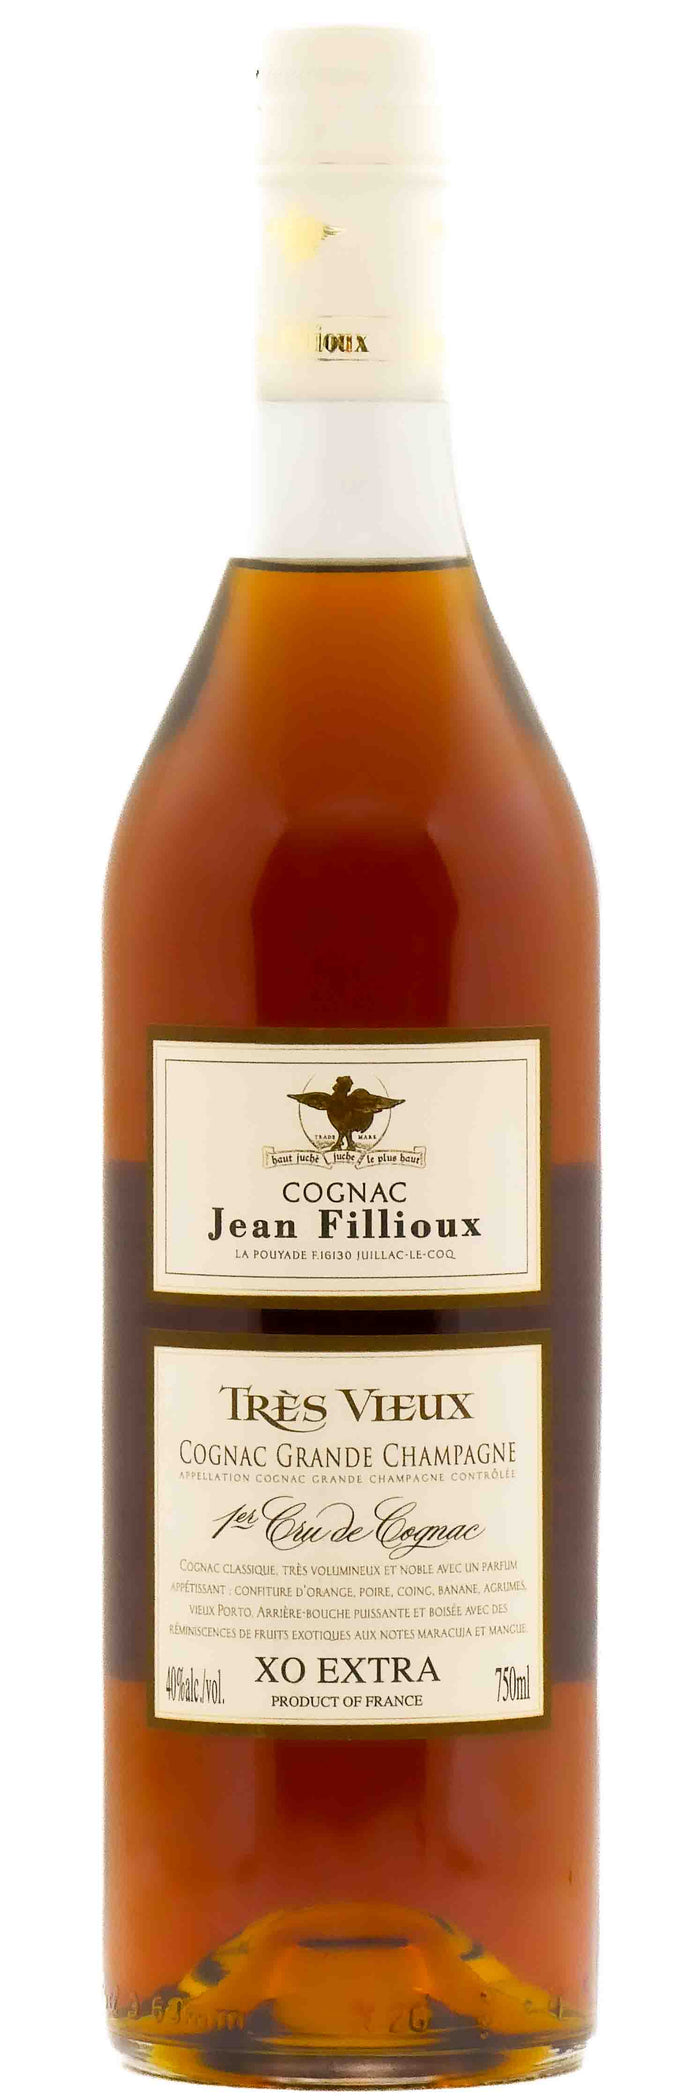 Jean Fillioux Cognac XO Extra Très Vieux